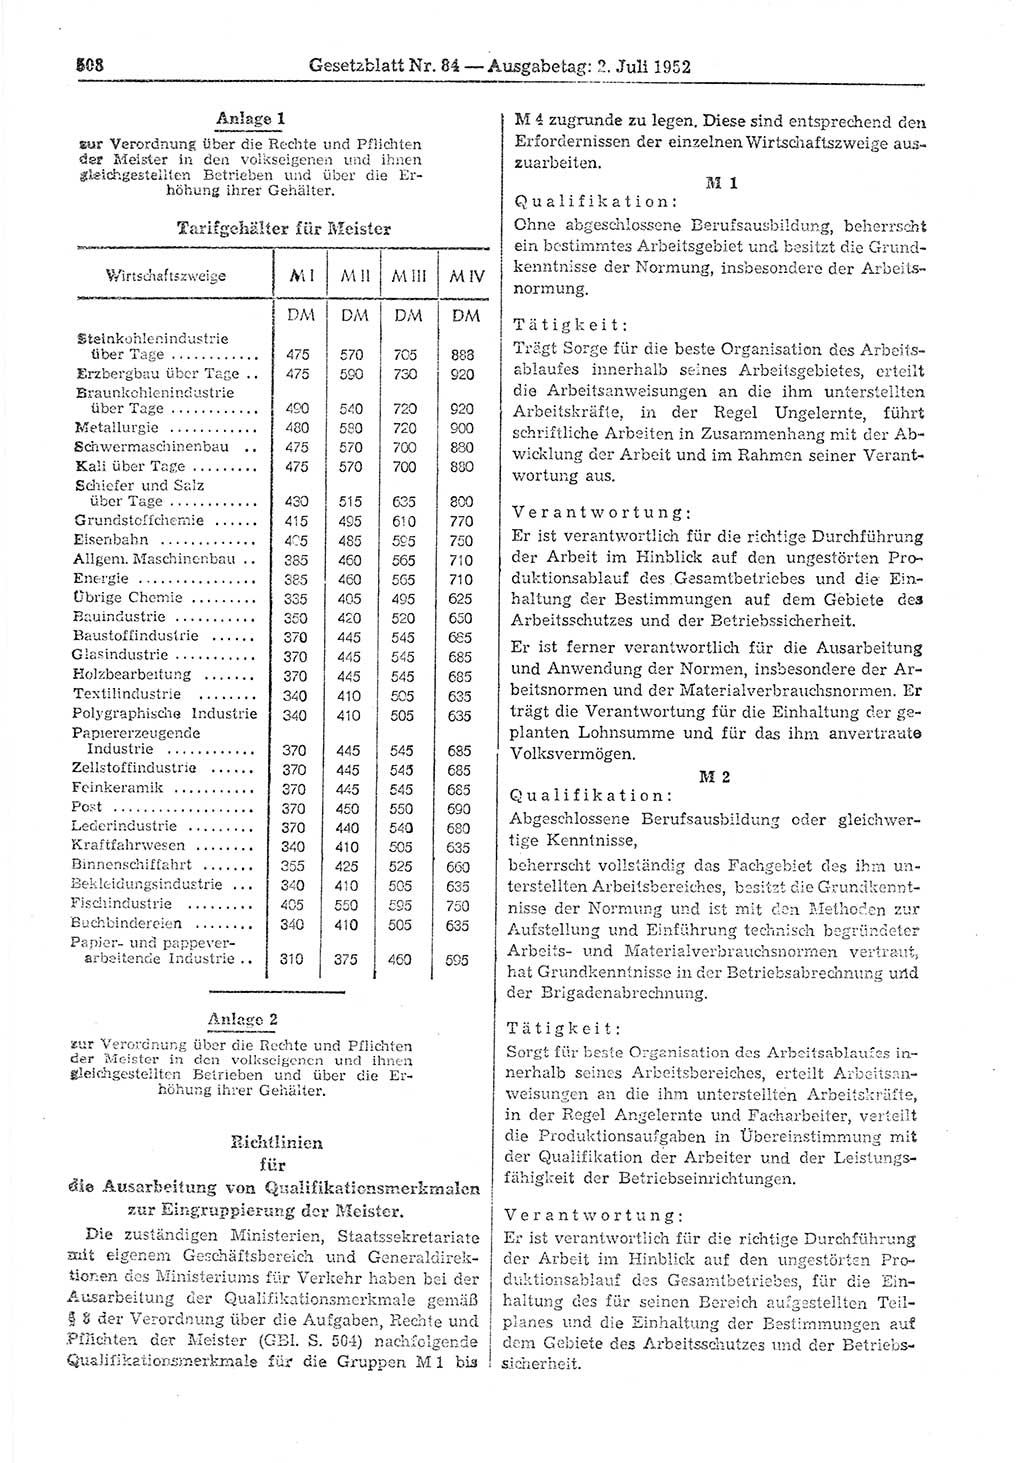 Gesetzblatt (GBl.) der Deutschen Demokratischen Republik (DDR) 1952, Seite 508 (GBl. DDR 1952, S. 508)